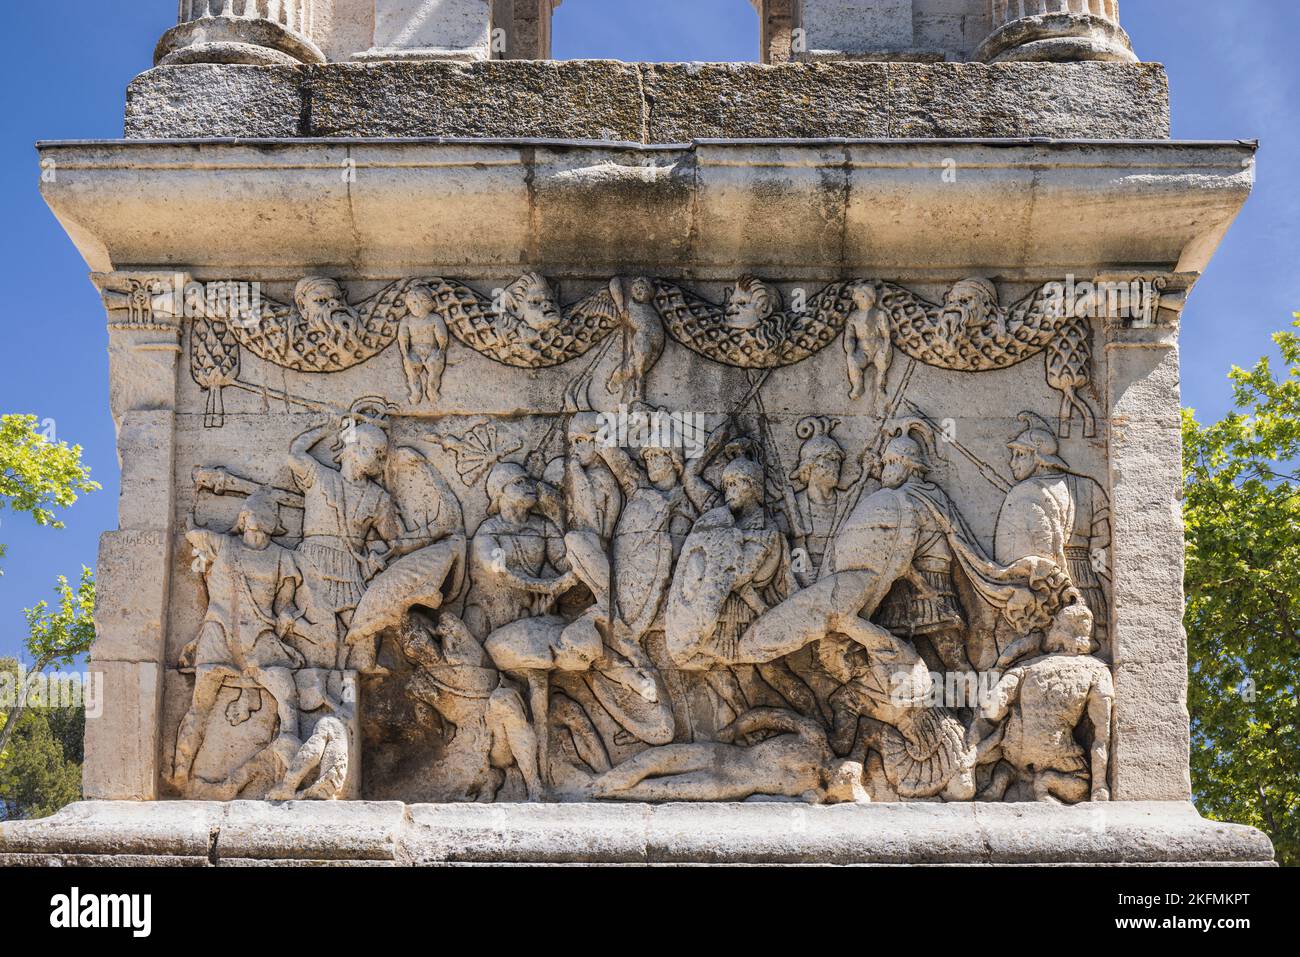 Saint-Rémy-de-Provence, Bouches-du-Rhône, Provenza, Francia. Friso de escena de batalla en el podio del Mausoleo. La estructura data de alrededor de 30 aC Foto de stock